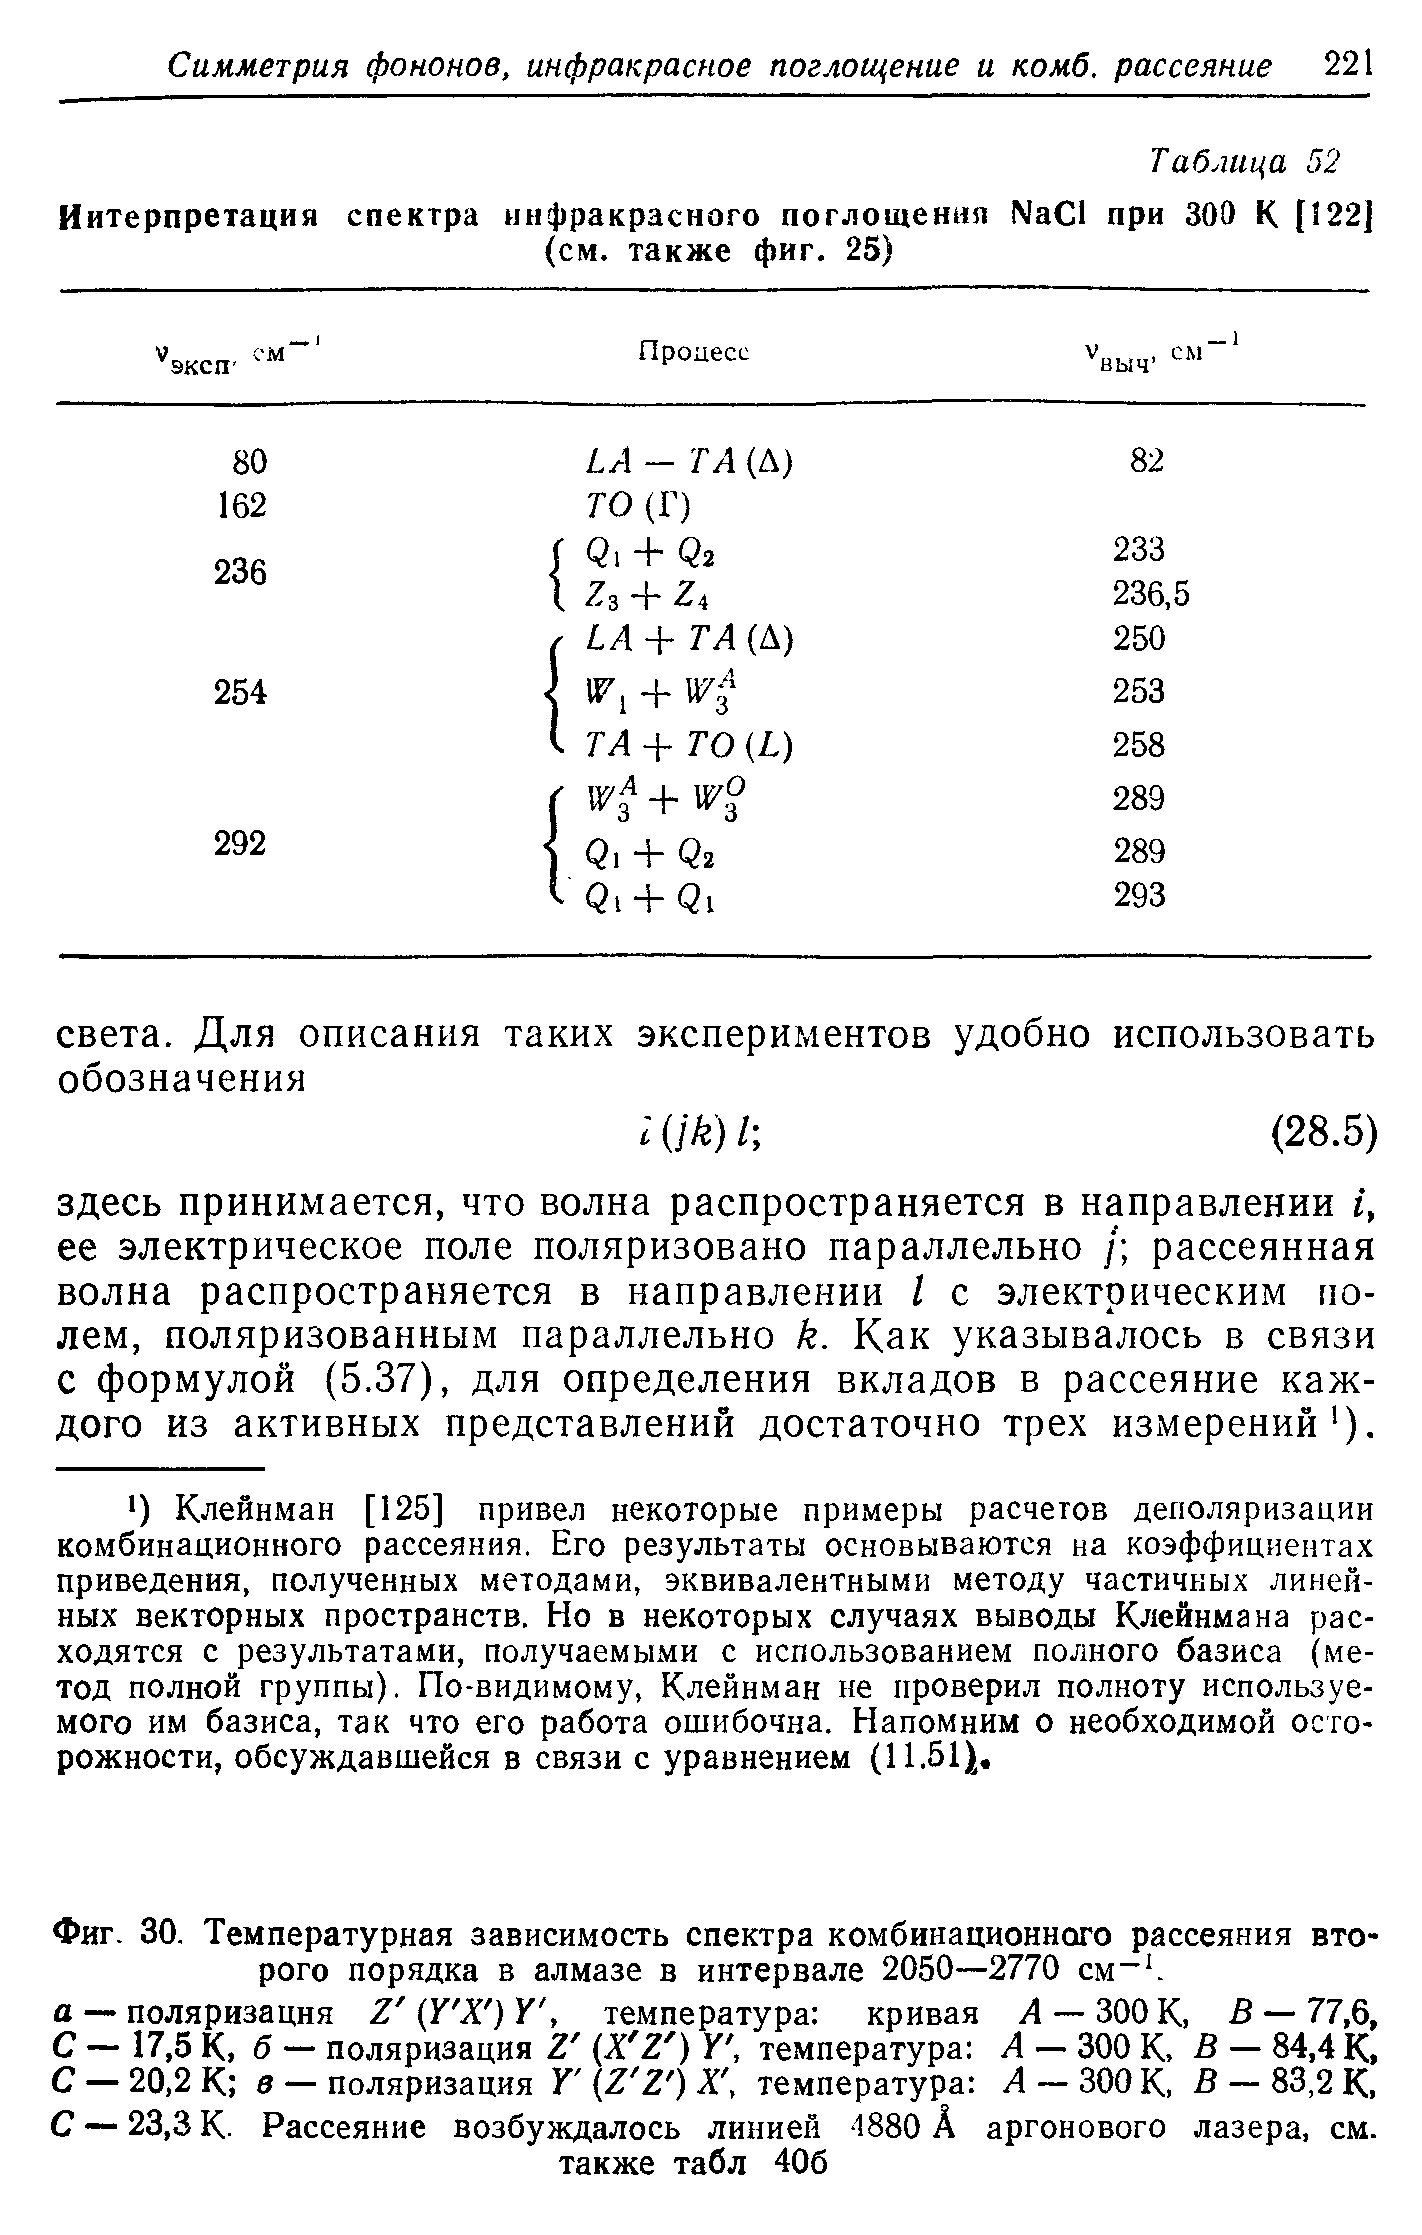 Фиг. 30. <a href="/info/191882">Температурная зависимость</a> <a href="/info/237936">спектра комбинационного рассеяния</a> второго порядка в алмазе в интервале 2050—2770 см- . а — поляризация Z (У Х ) У, температура кривая А — 300 К, В — 77,6, С — 17,5 К, б — поляризация 2 X Z ) У, температура А — 300 К, 5 — 84,4 К, С — 20,2 К в — поляризация Г (Z Z ) Х температура Л — 300 К, В — 83,2 К, С — 23,3 К. Рассеяние возбуждалось линией -1880 А аргонового лазера, см.
